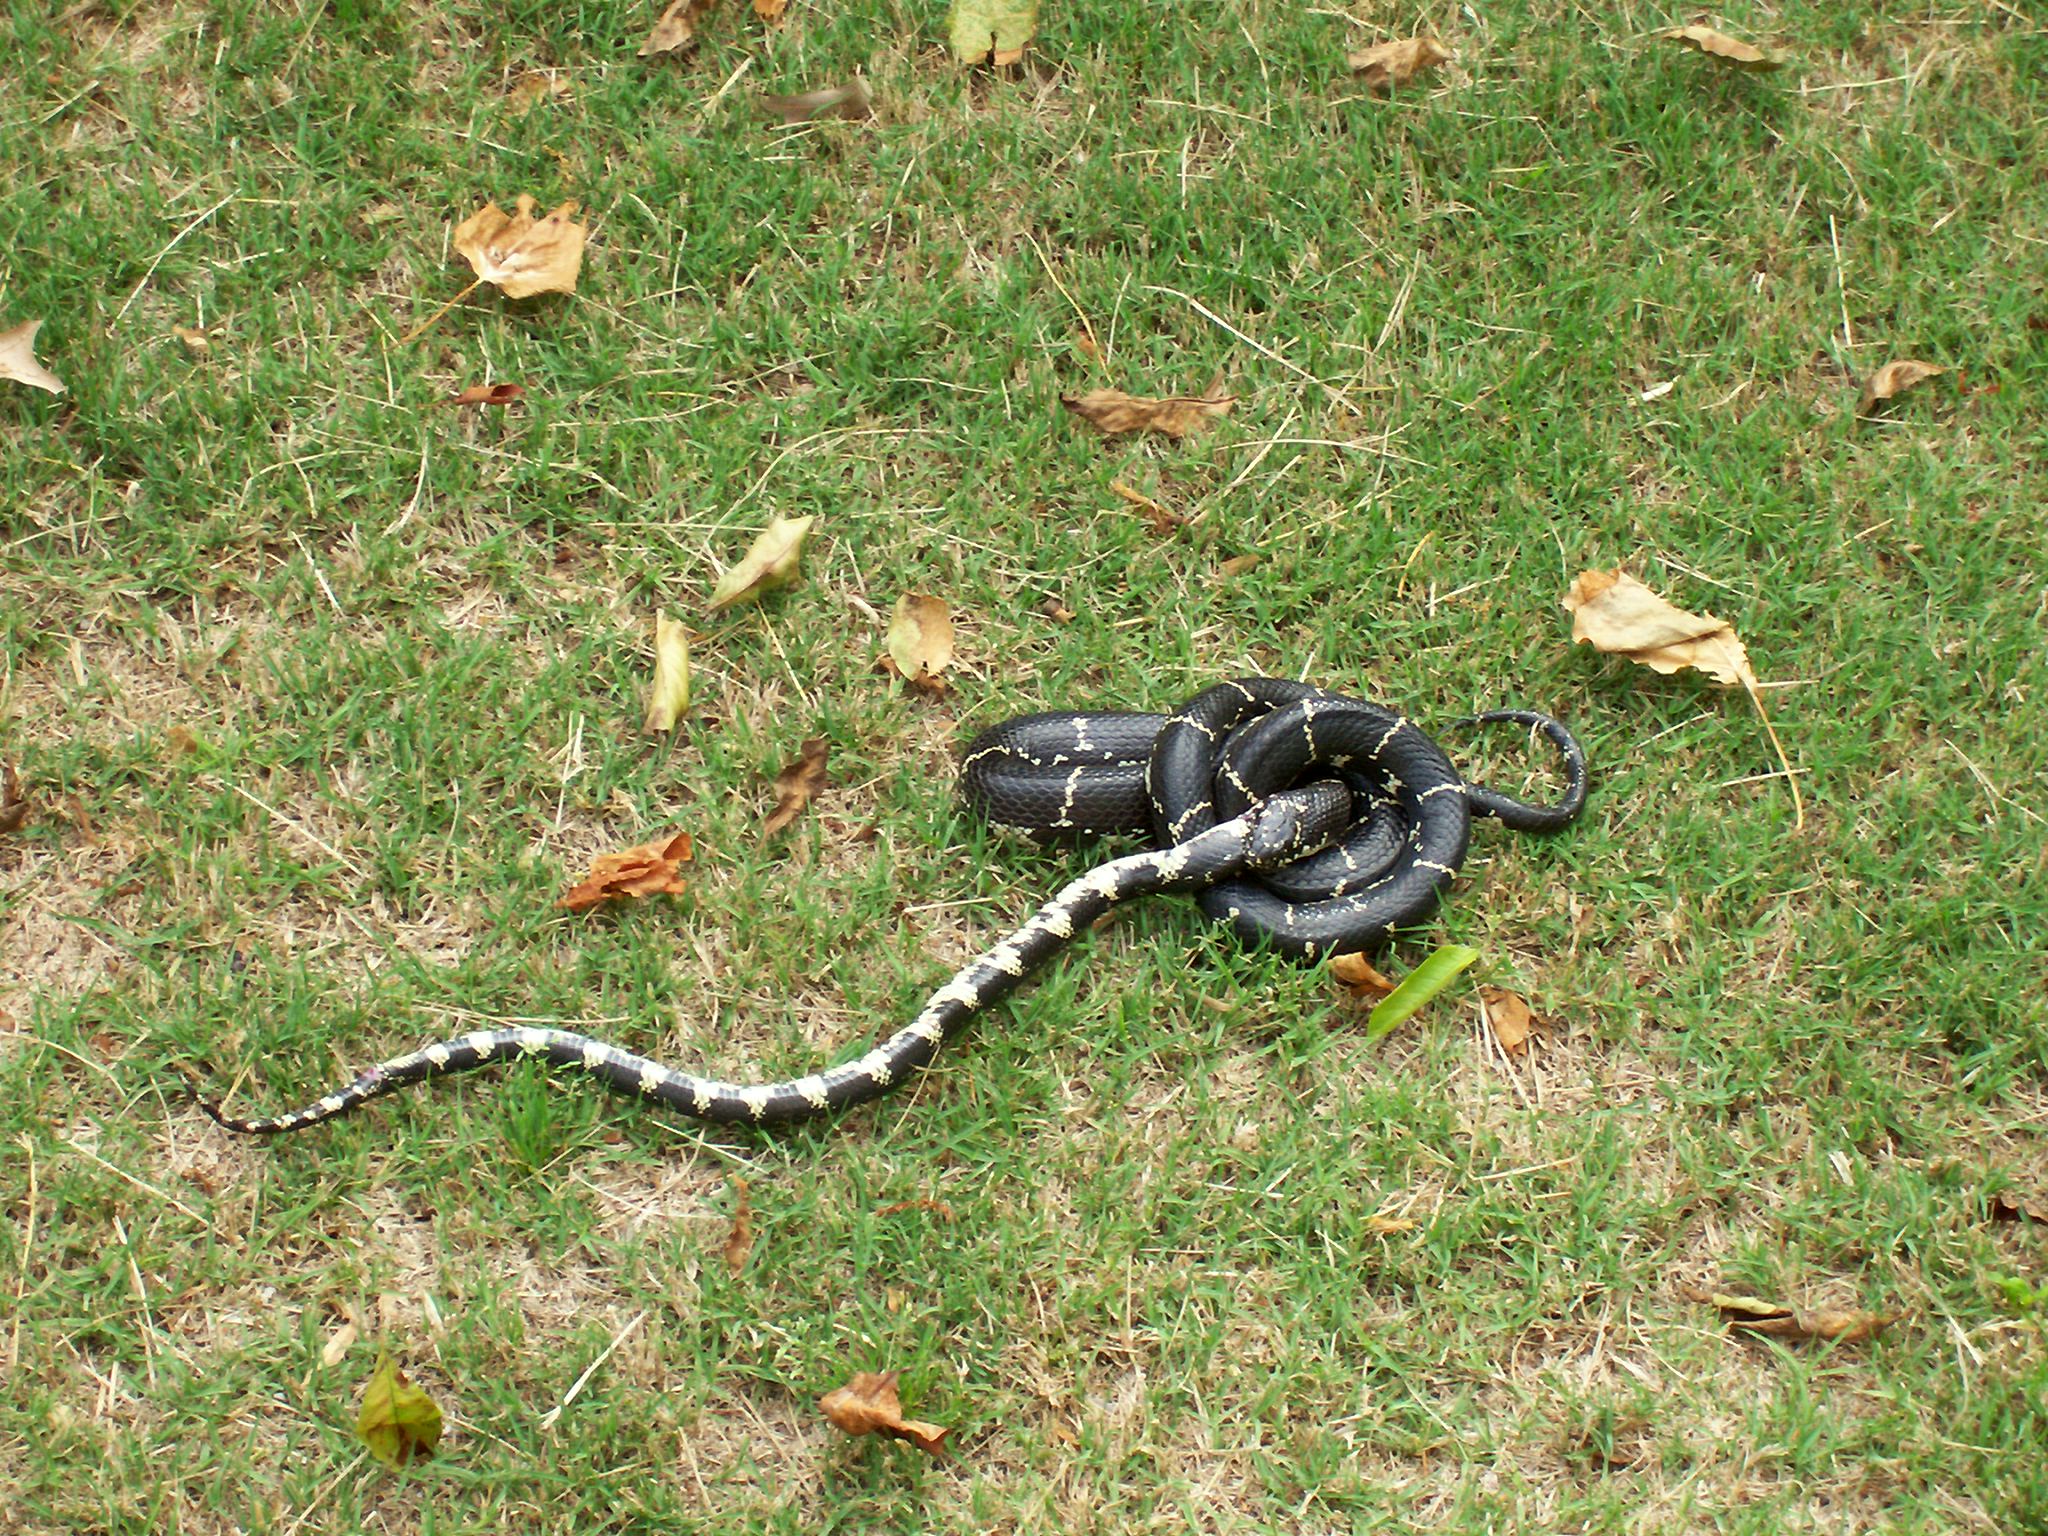 kingsnake eating rat snake